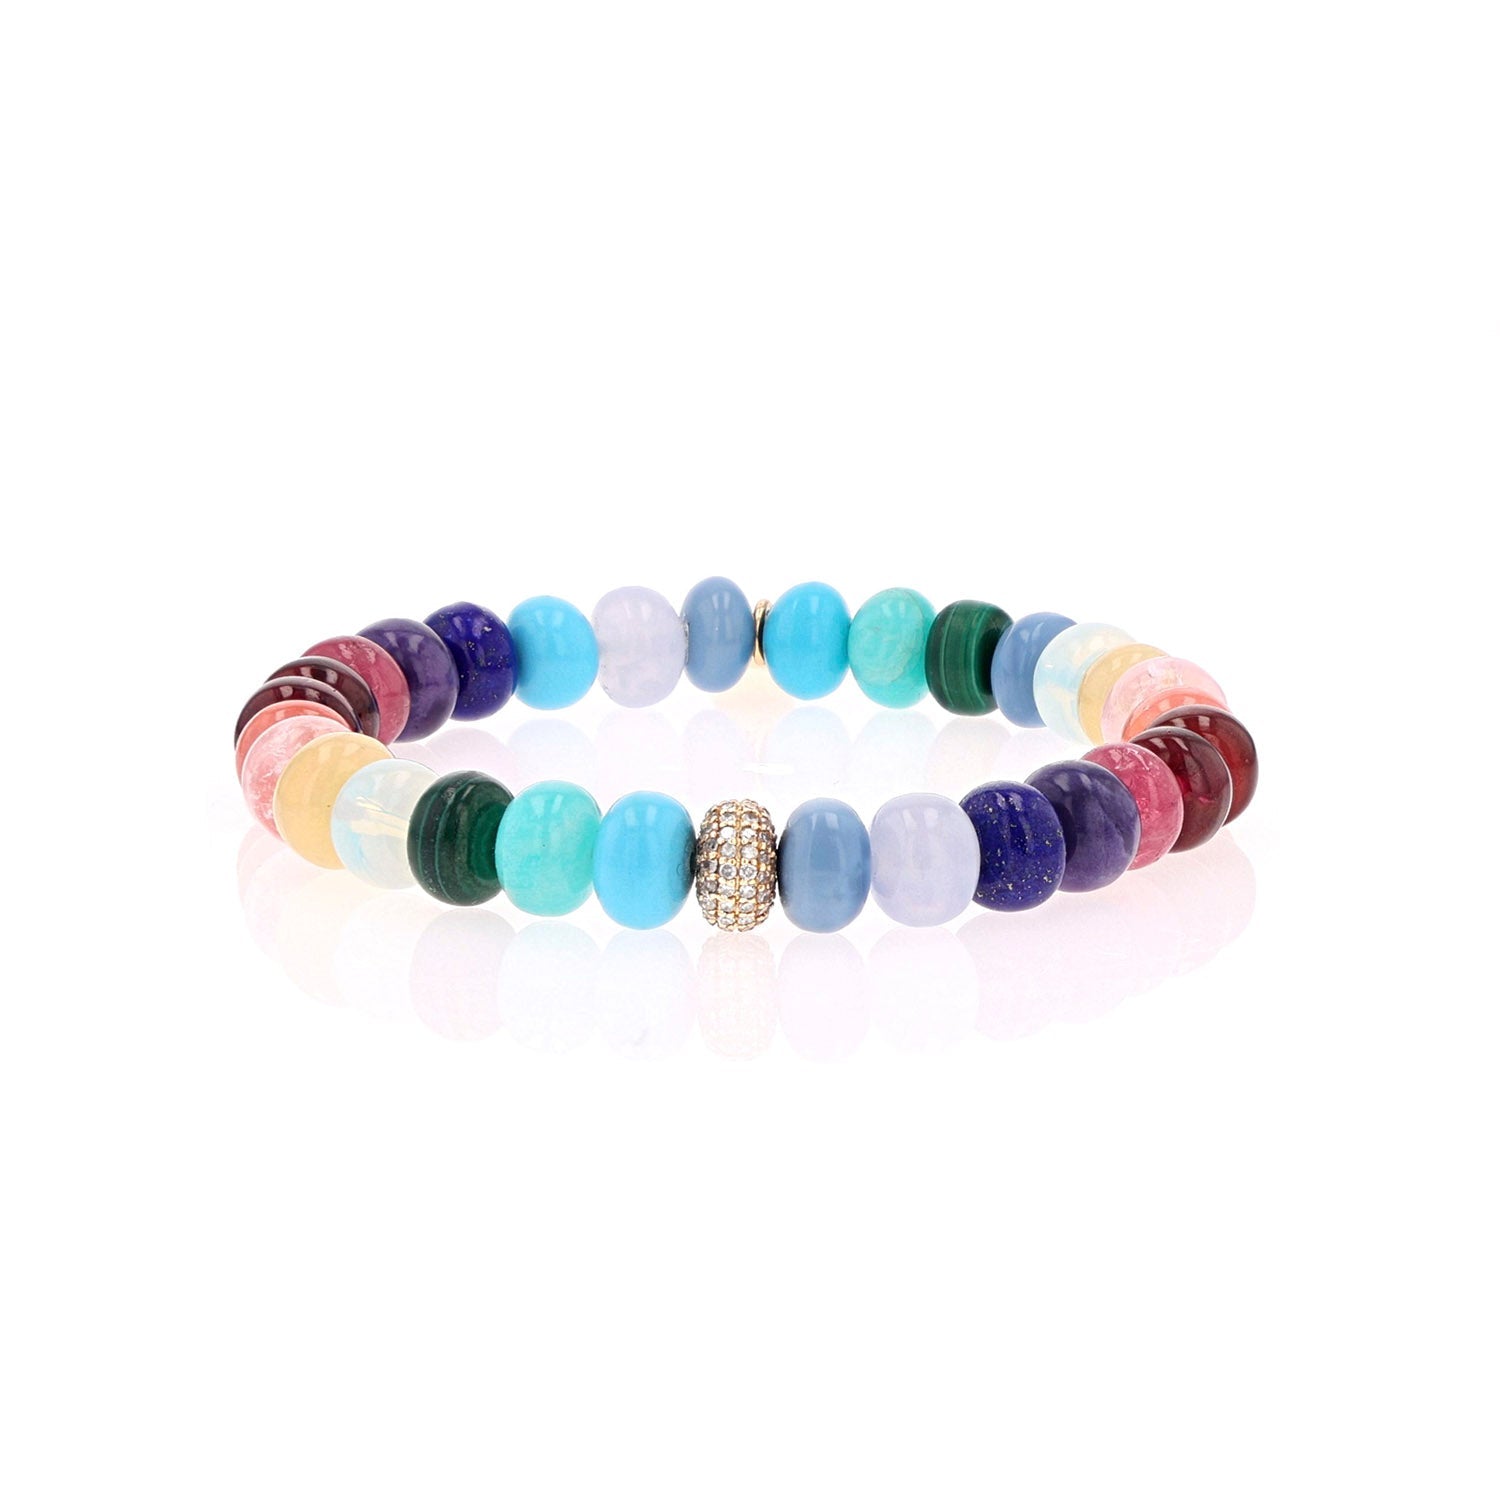 14k Rainbow Gemstone Mix Bracelet with Diamond Donut Bead  BG000796 - TBird